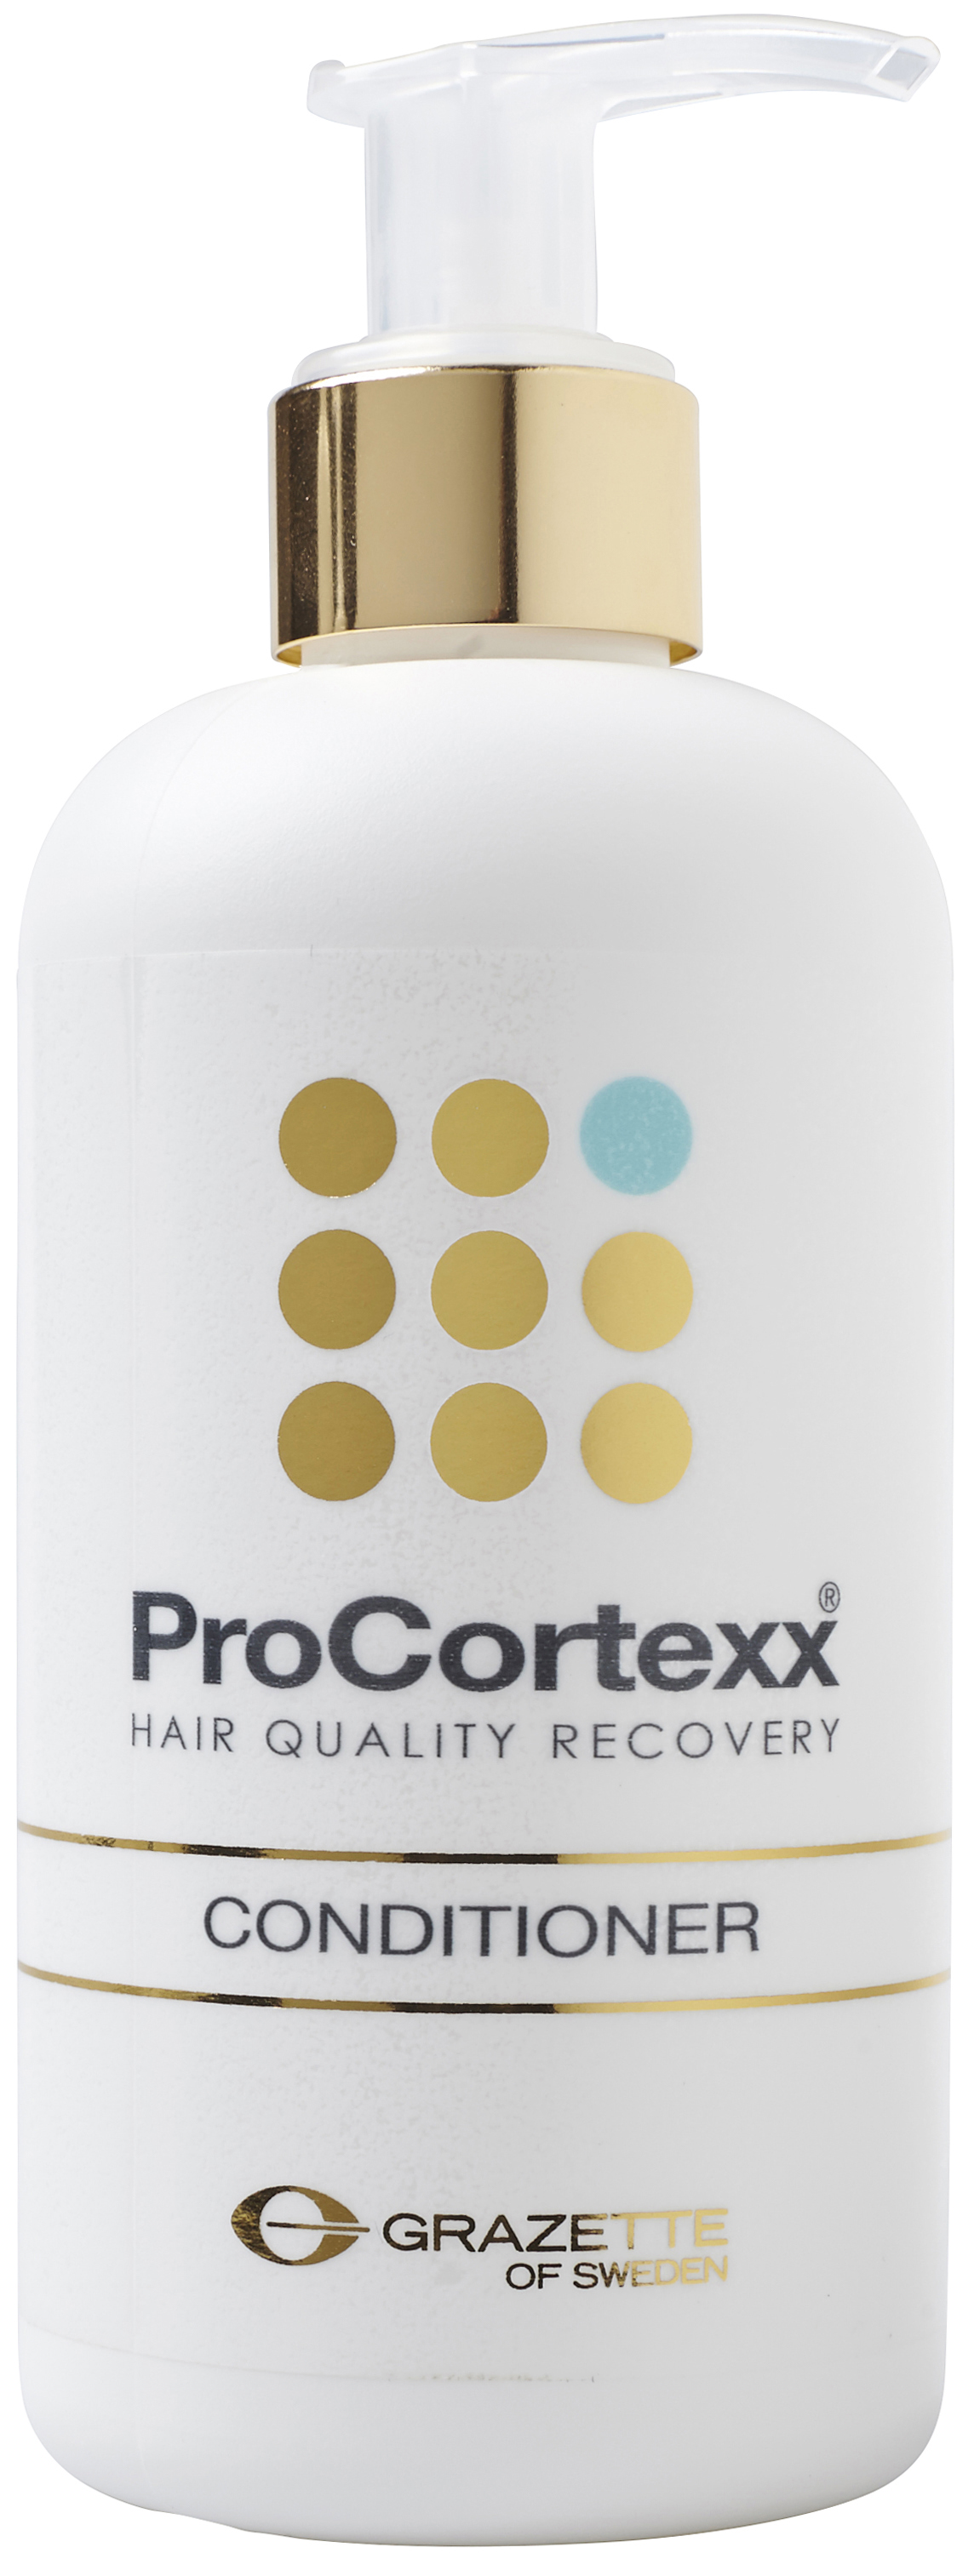 Grazette ProCortexx Conditioner 250ml